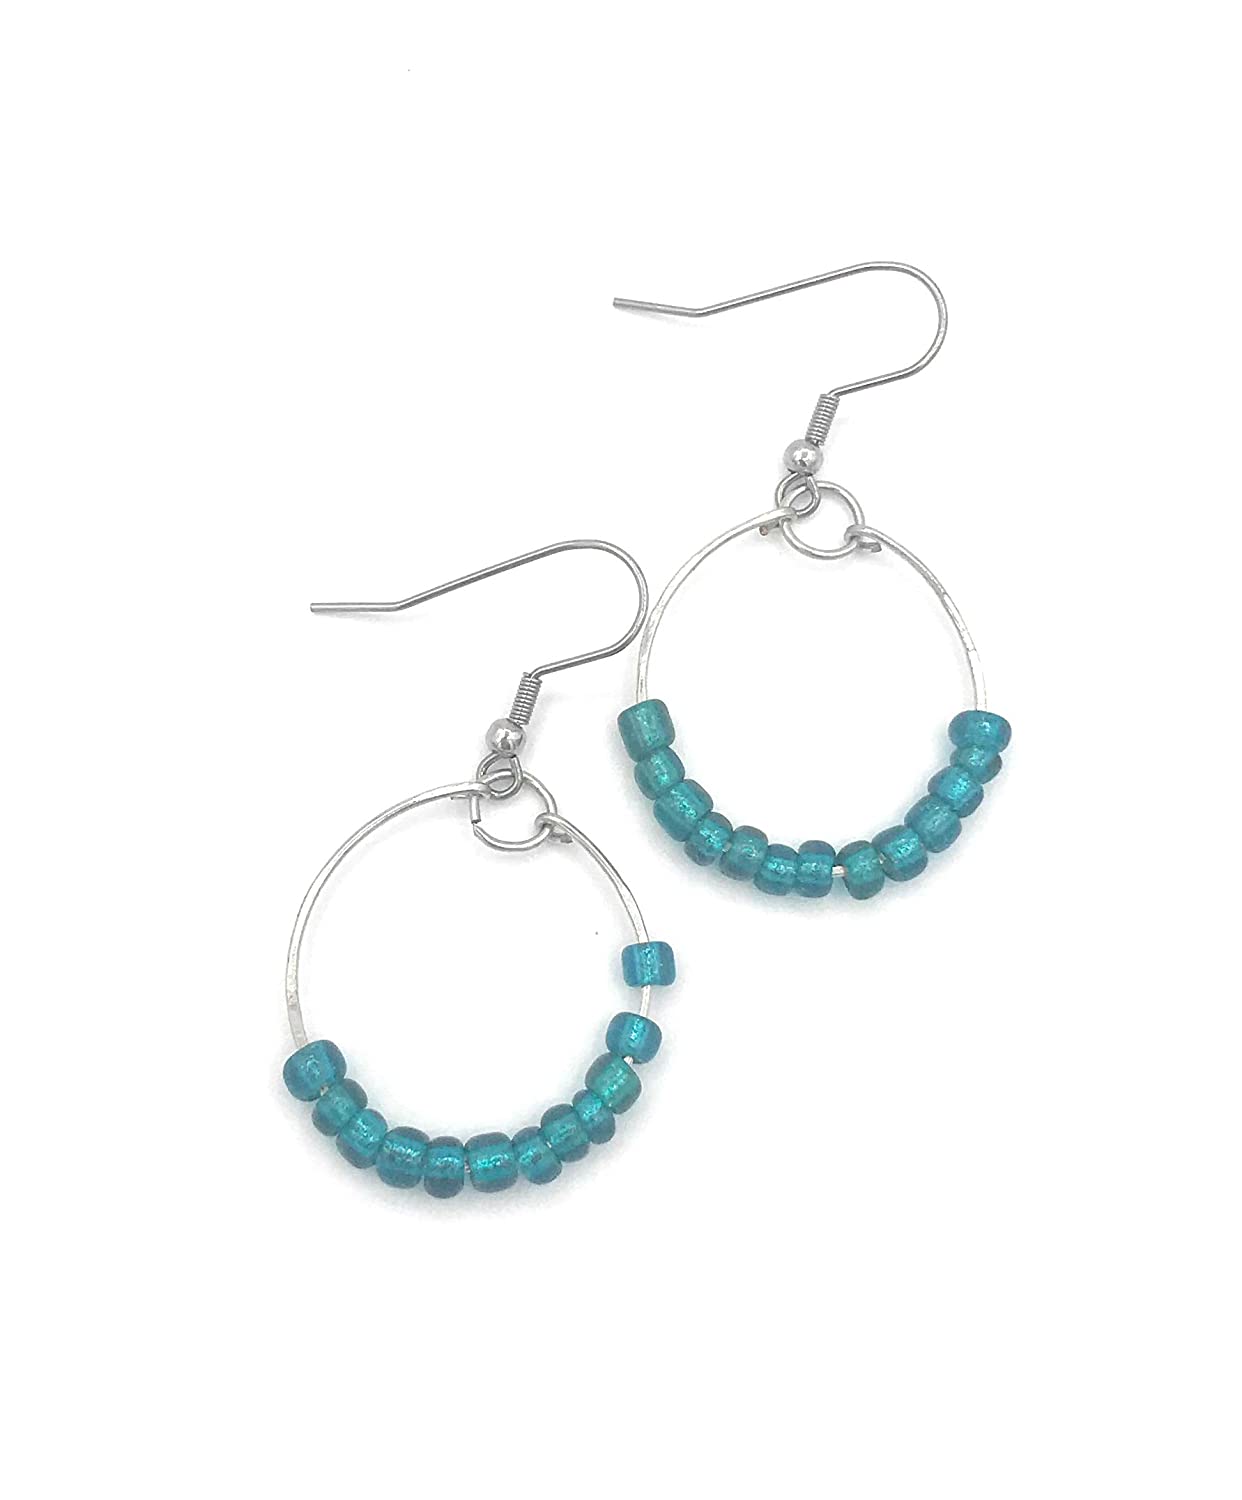 Teal Blue Beaded Hoop Earrings Side by Side View from Scott D Jewelry Designs